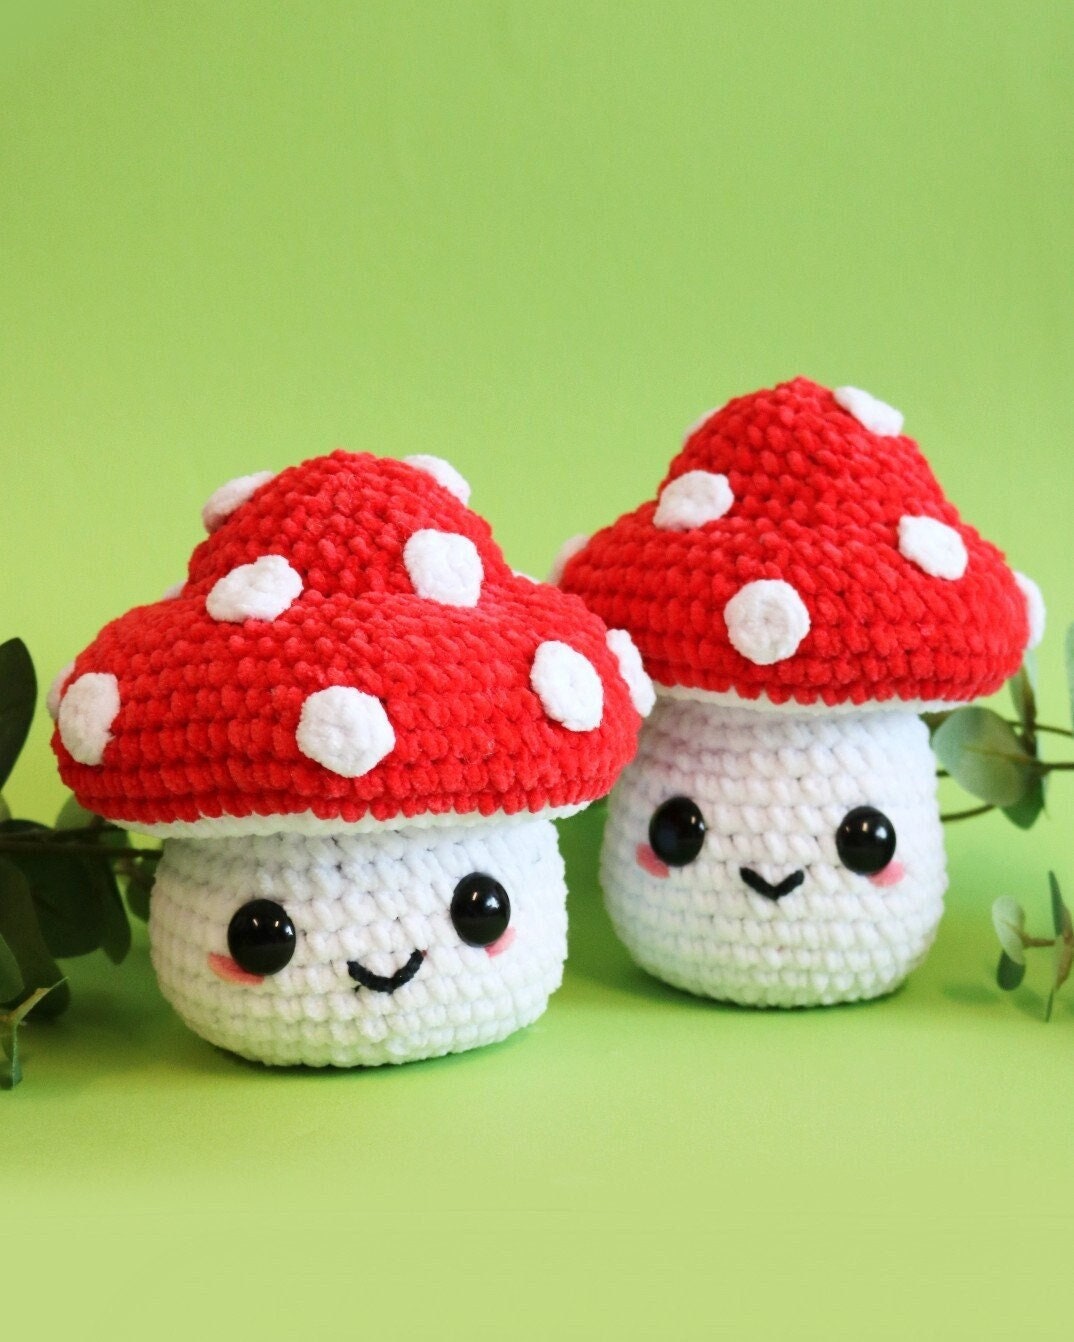 Mushroom Crochet Kit, Amigurumi Kit, Crochet Kit Beginner With Yarn,  Mushroom Crochet Pattern, Amigurumi Crochet Pattern, Toadstool Crochet 